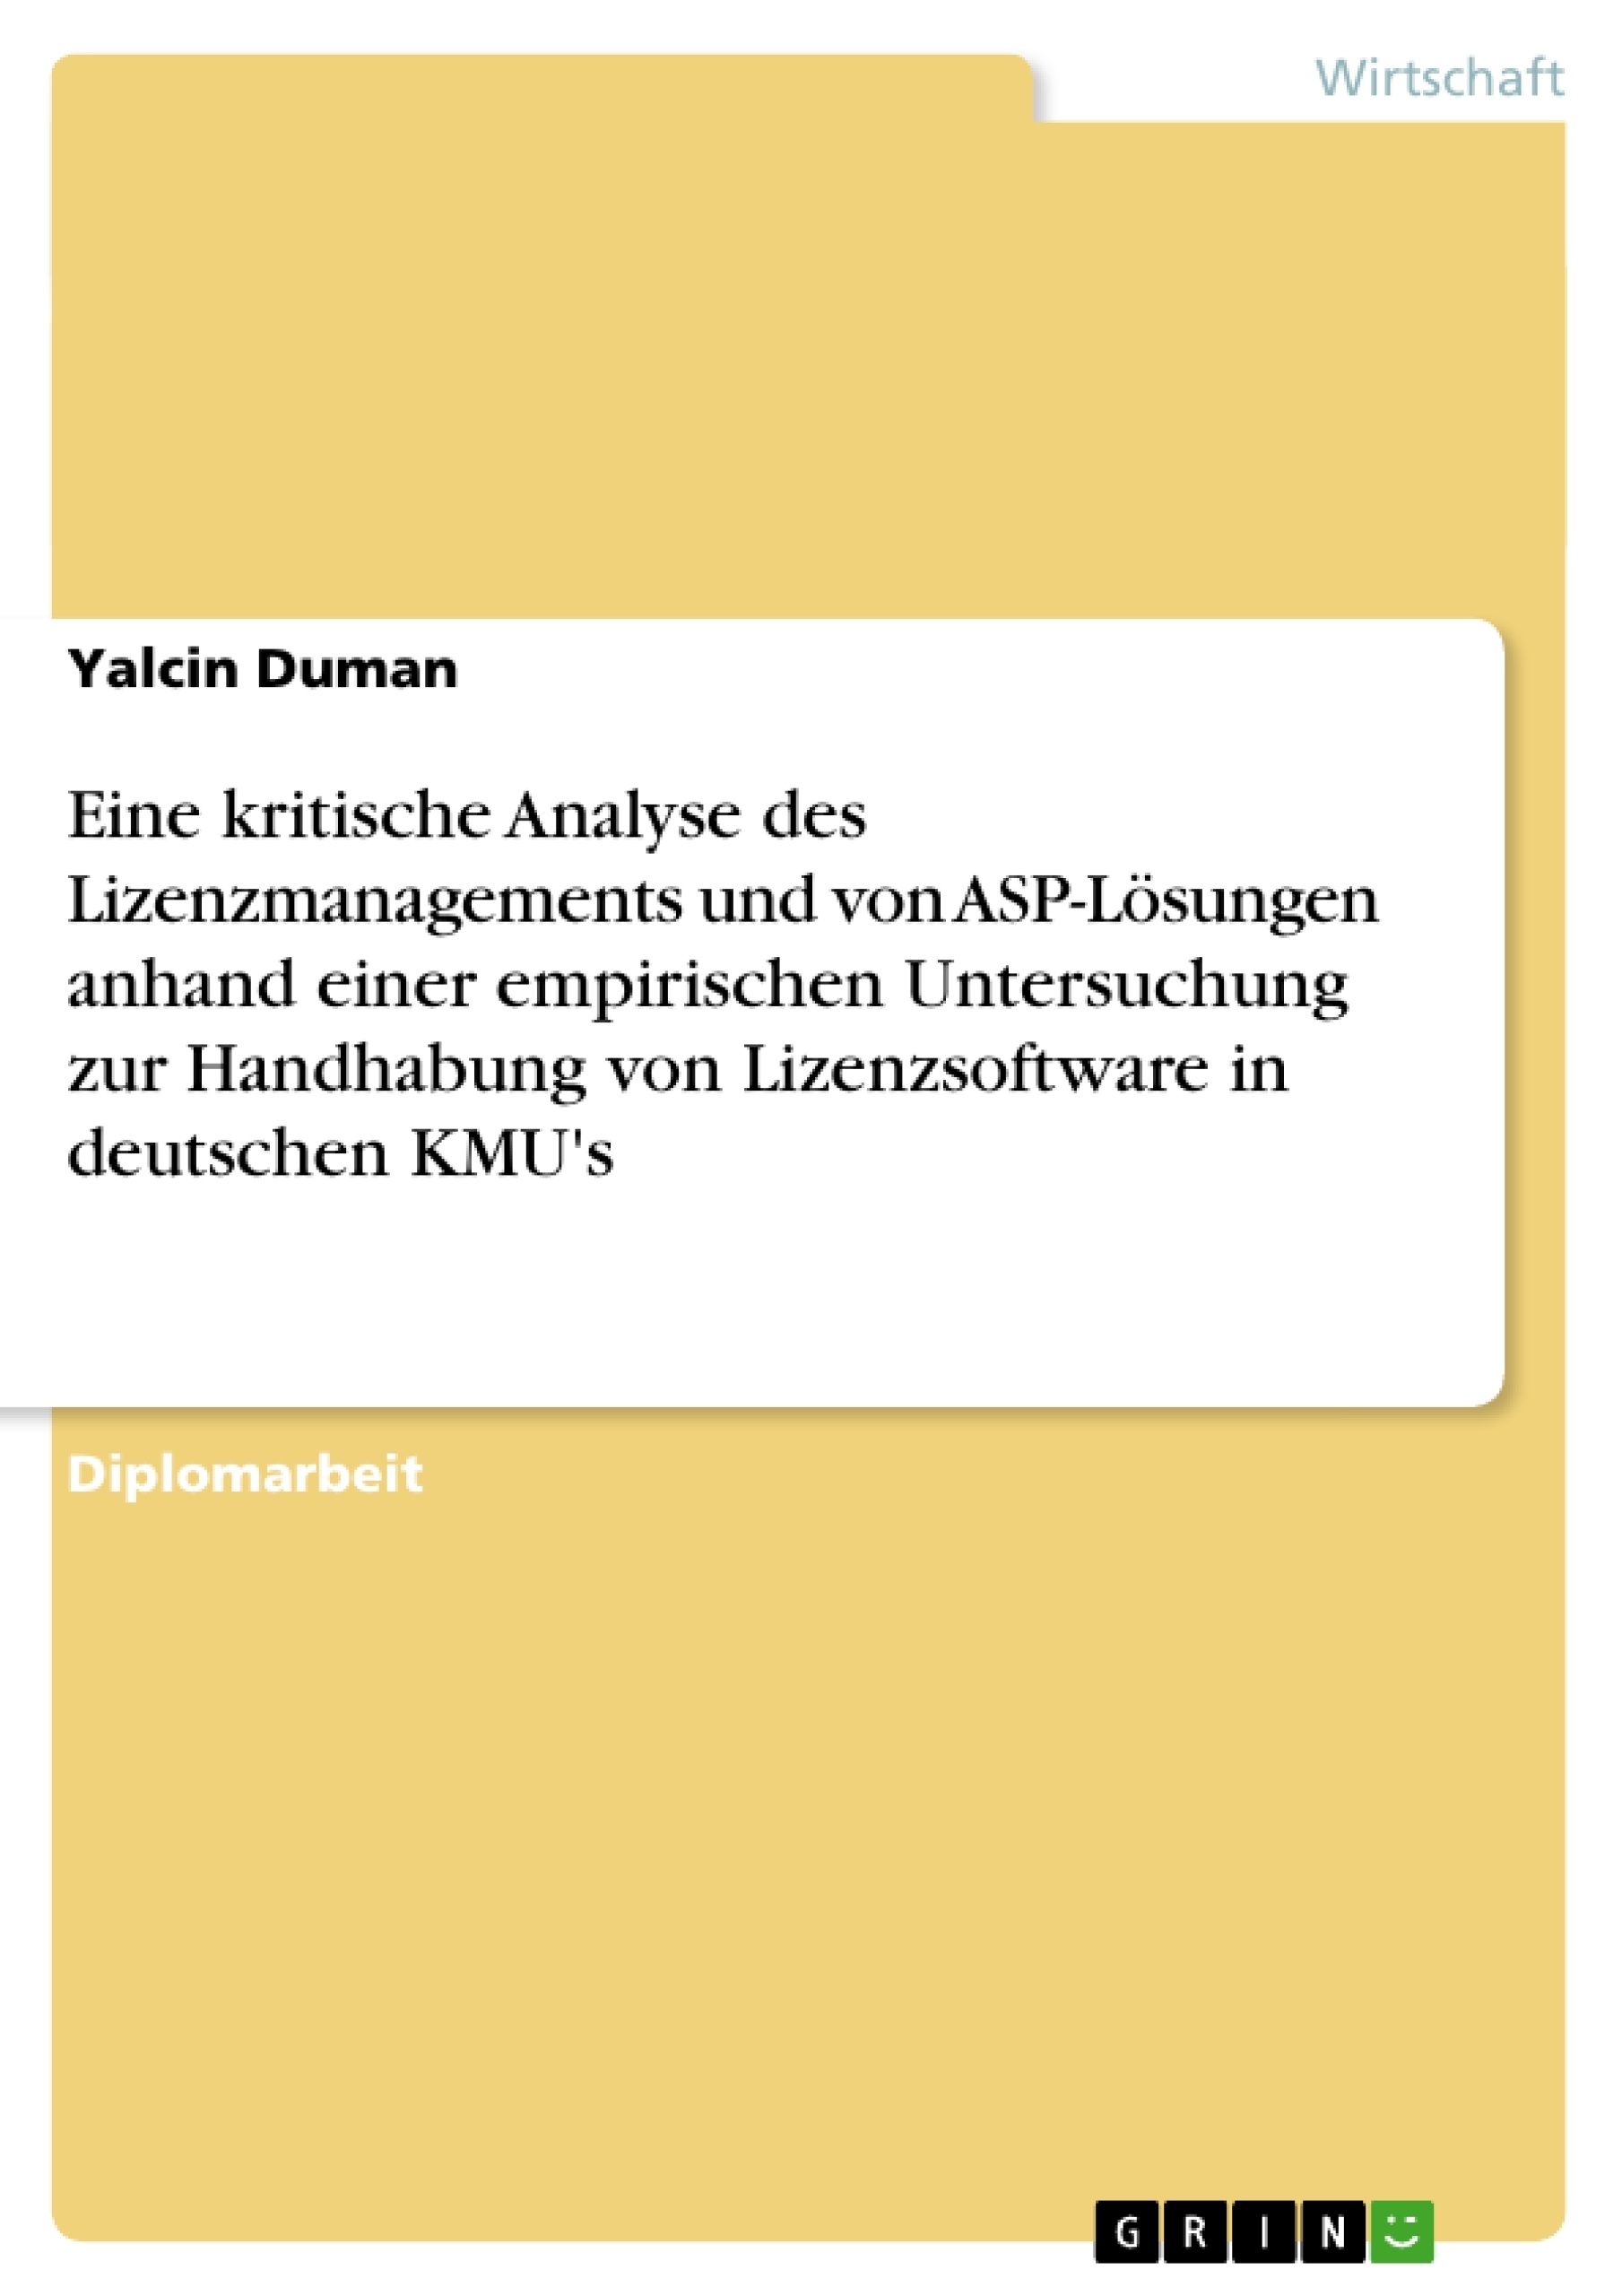 Title: Eine kritische Analyse des Lizenzmanagements und von ASP-Lösungen anhand einer empirischen Untersuchung zur Handhabung von Lizenzsoftware in deutschen KMU's